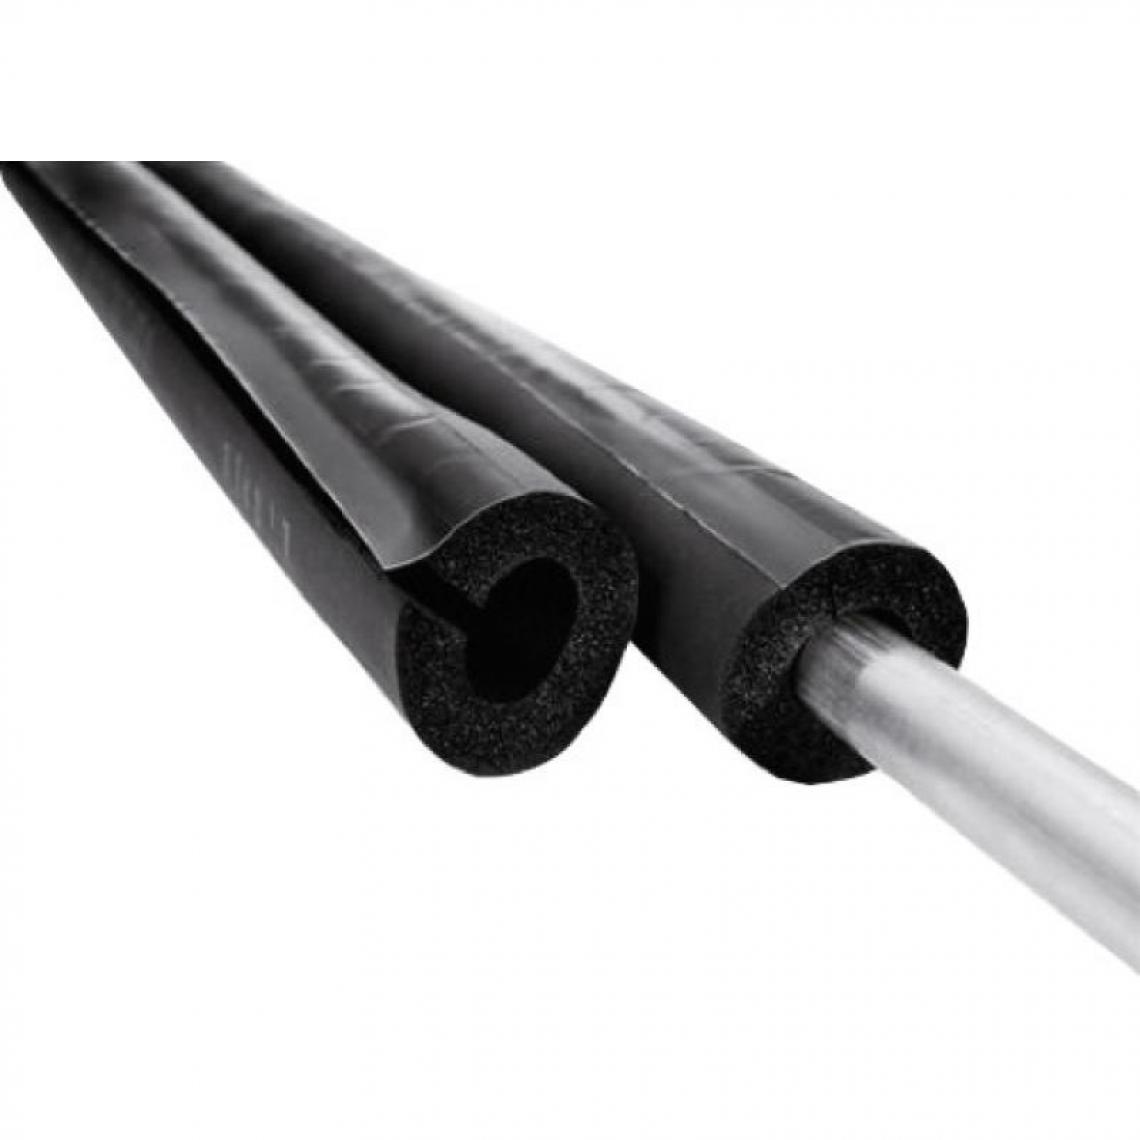 NMC - Manchon isolant fendu M1, épaisseur 13 mm, longueur 2 m, pour tuyaux diamètre 12 - Coudes et raccords PVC